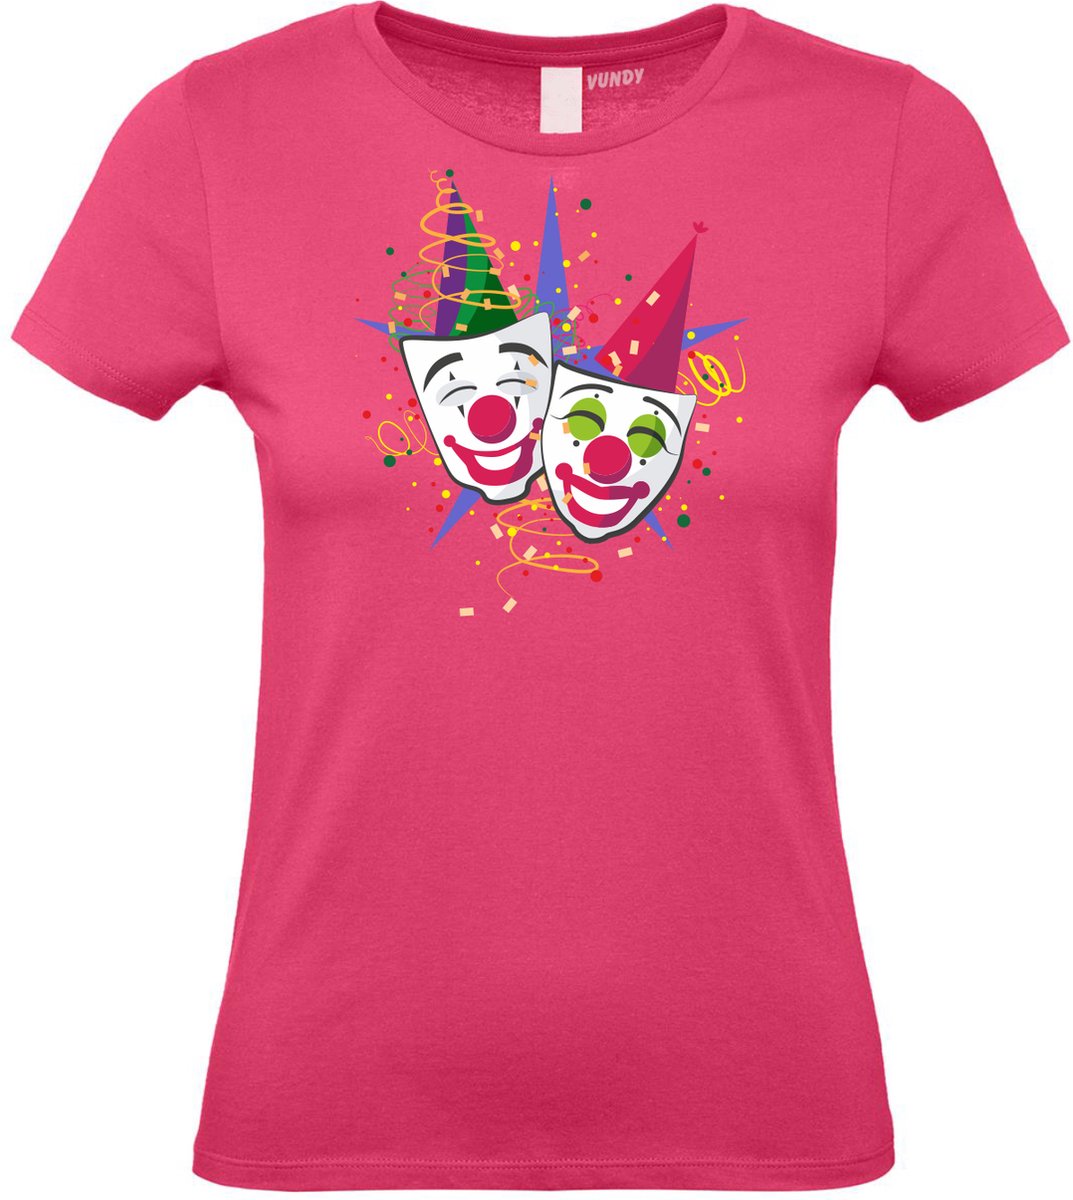 Dames T-shirt Carnaval Masker | Carnaval | Carnavalskleding Dames Heren | Roze | maat S